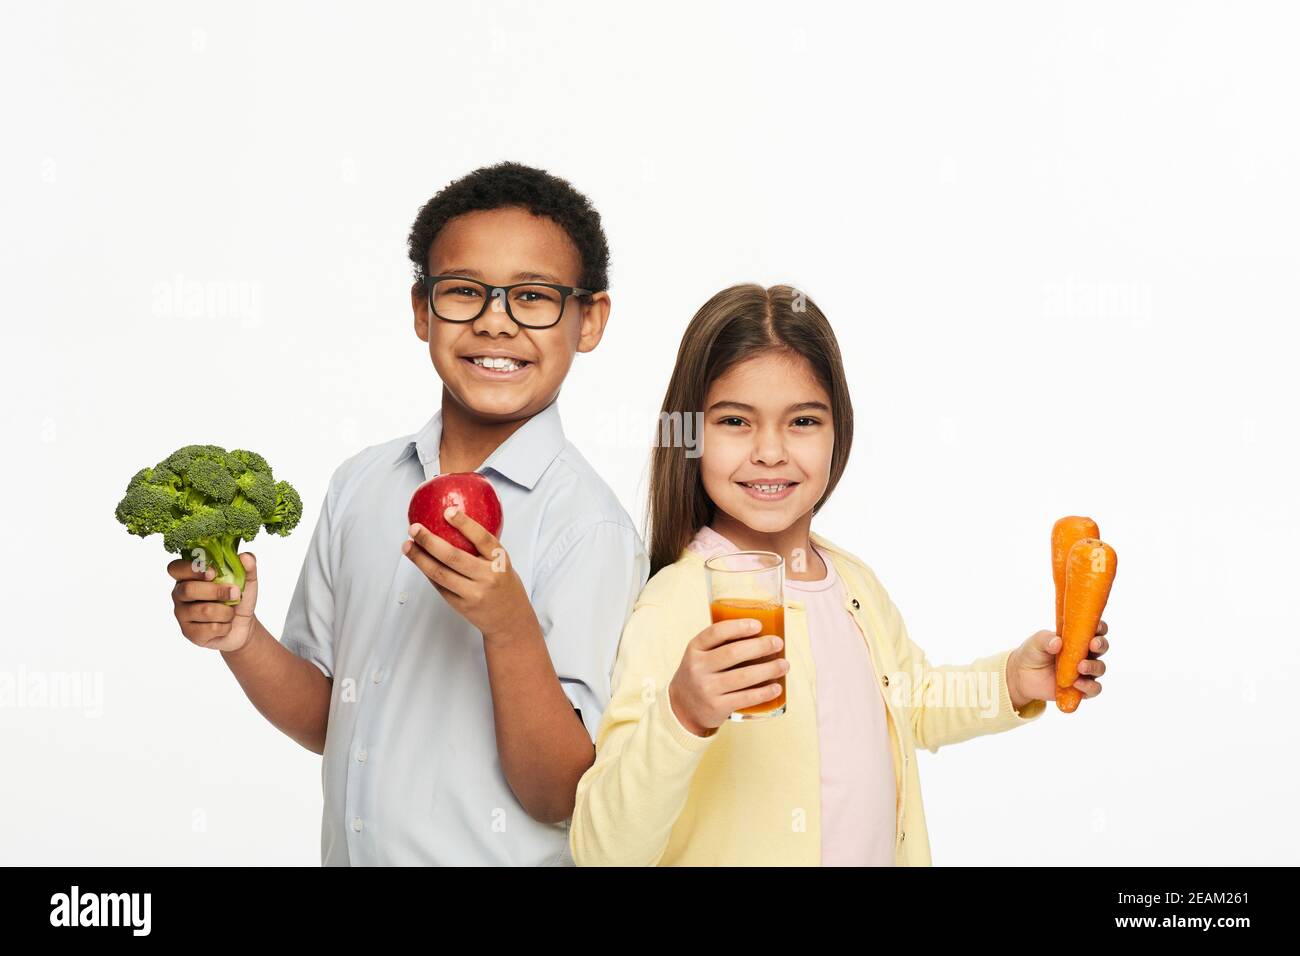 Gruppo multietnico di bambini con verdure sane, frutta e succo di carota. Pubblicità bambini nutrizione sana Foto Stock